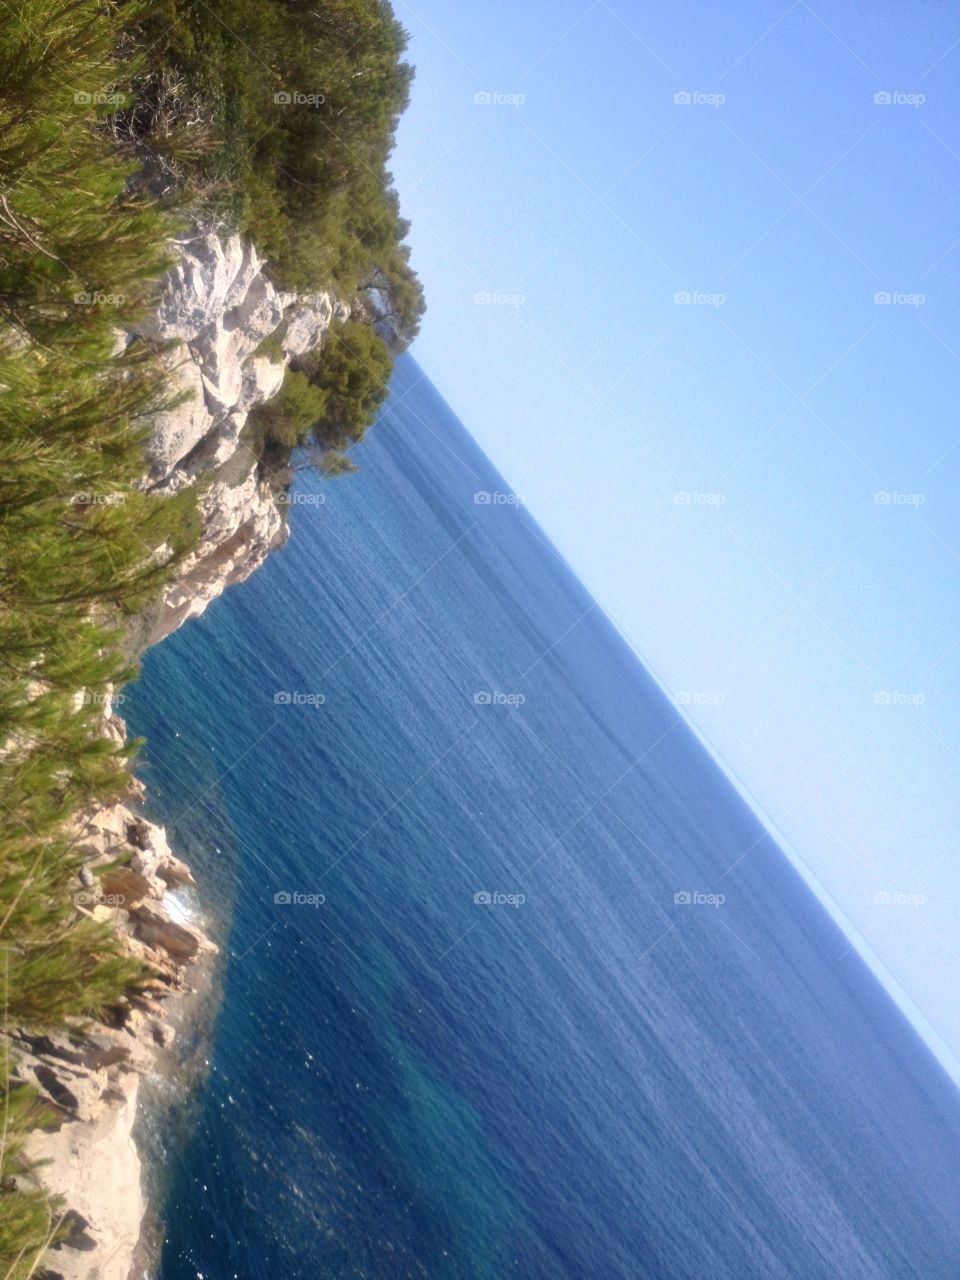 Menorca is beautiful - paradise